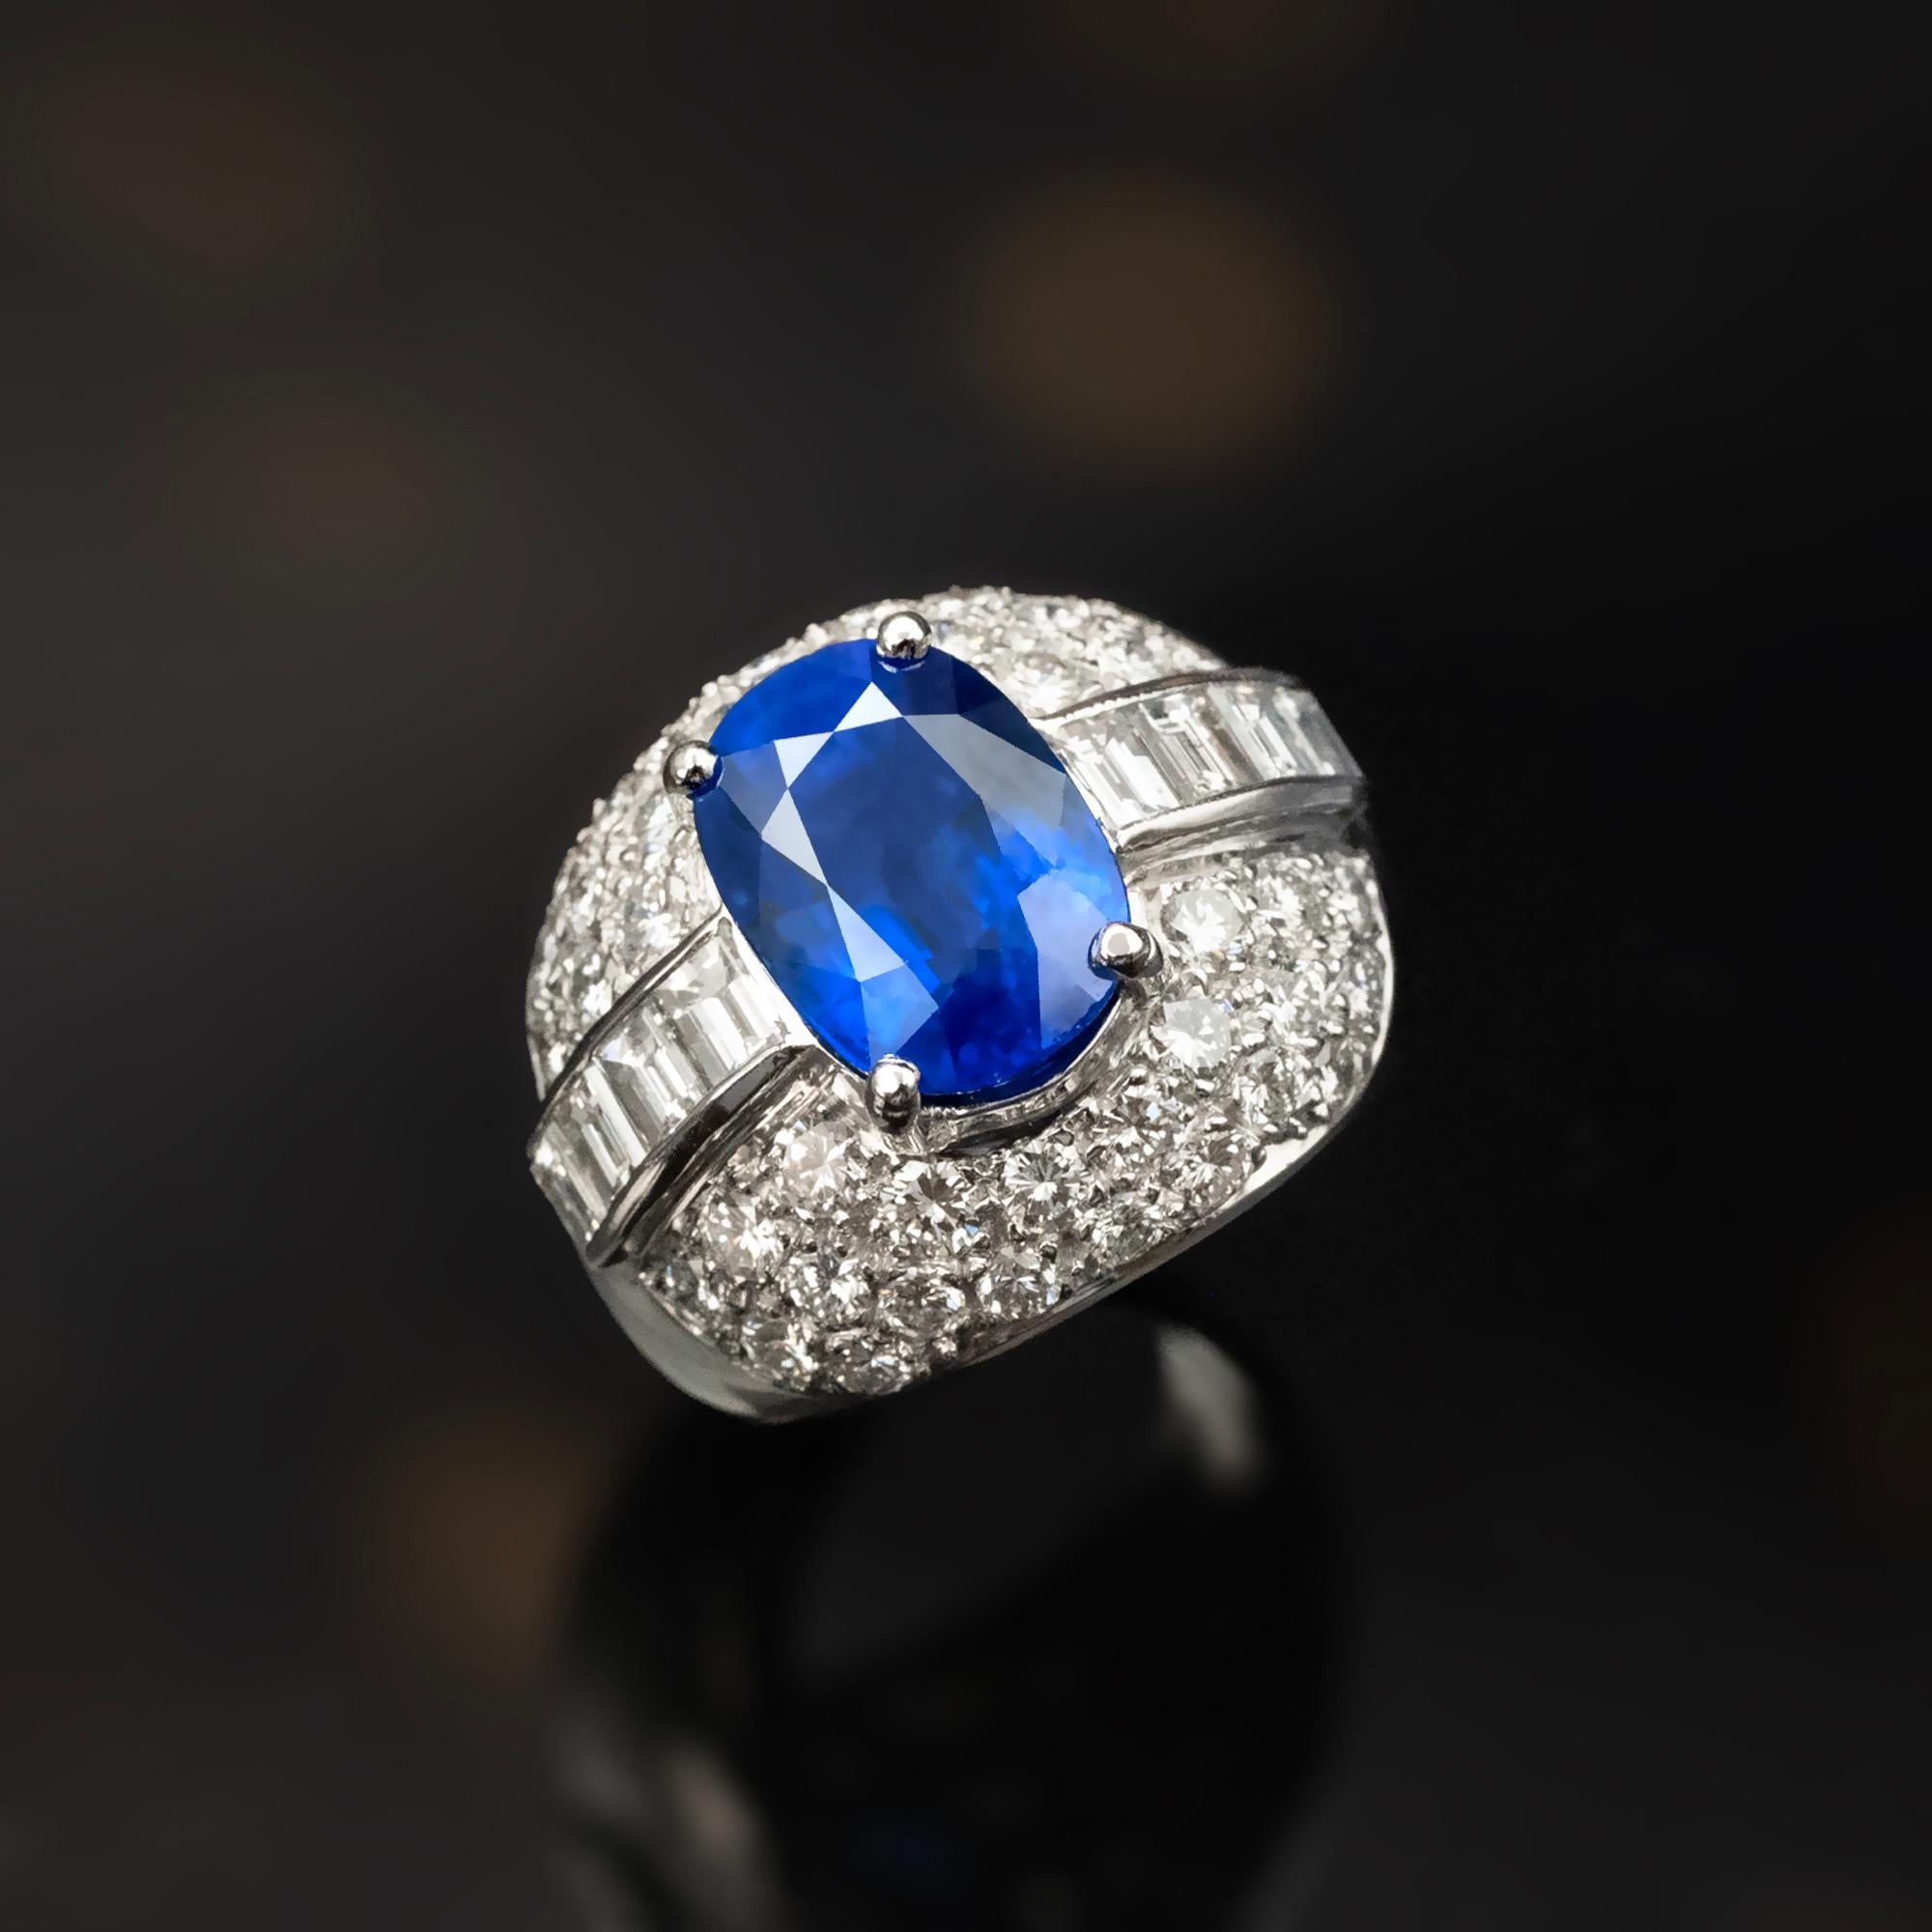 In diesem exquisiten Kuppelring befindet sich ein prächtiger zentraler Saphir mit einem Gewicht von 6,85 Karat, der einen lebhaften und begehrten königsblauen Farbton aufweist, der zertifiziert ist.  
Der Saphir wird durch eine Reihe von Diamanten